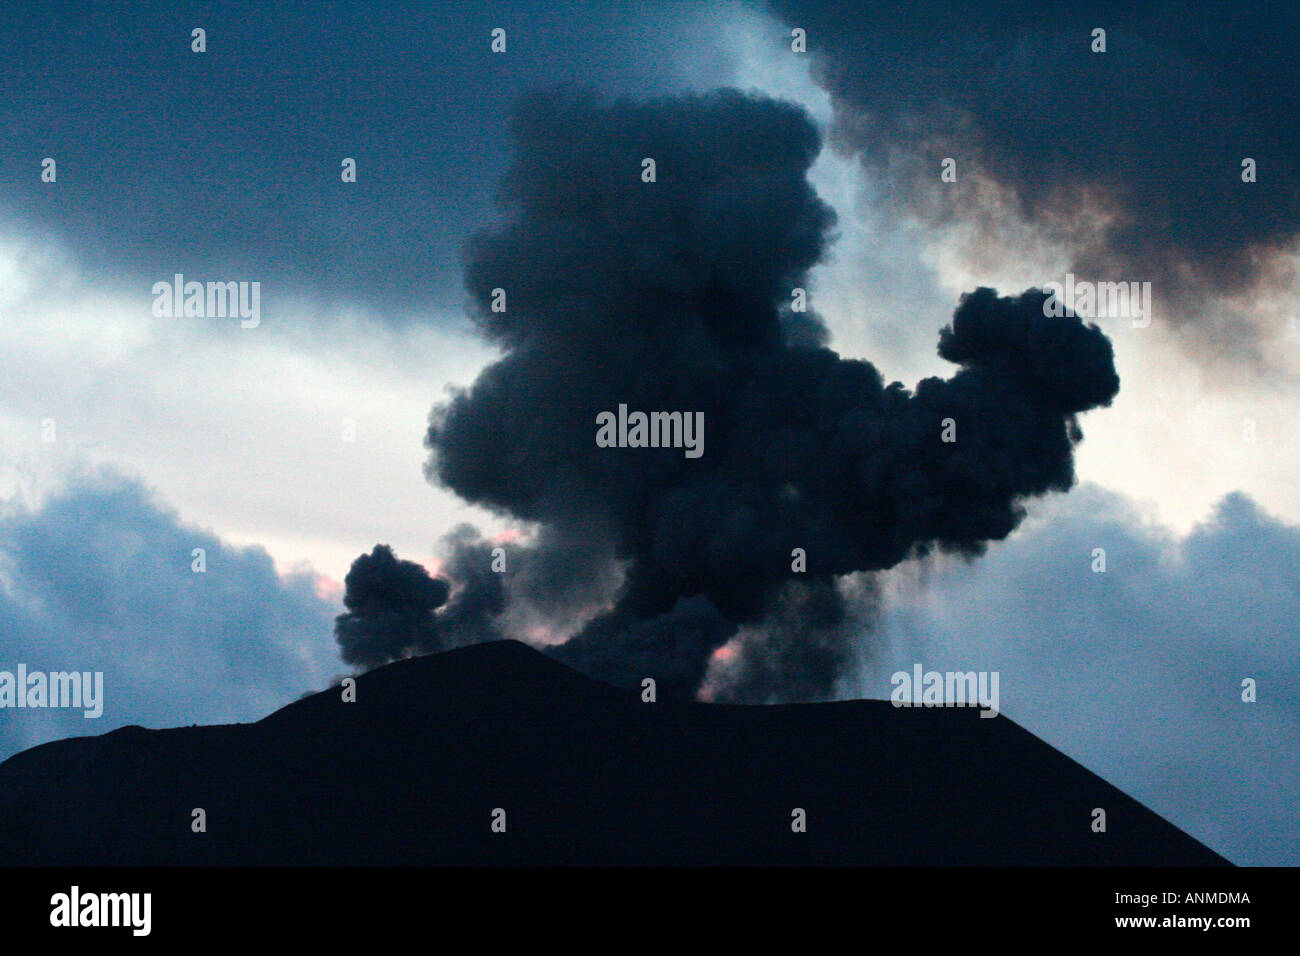 El fuego y el humo elevándose desde el volcán en erupción en la isla de Barren Andaman Foto de stock